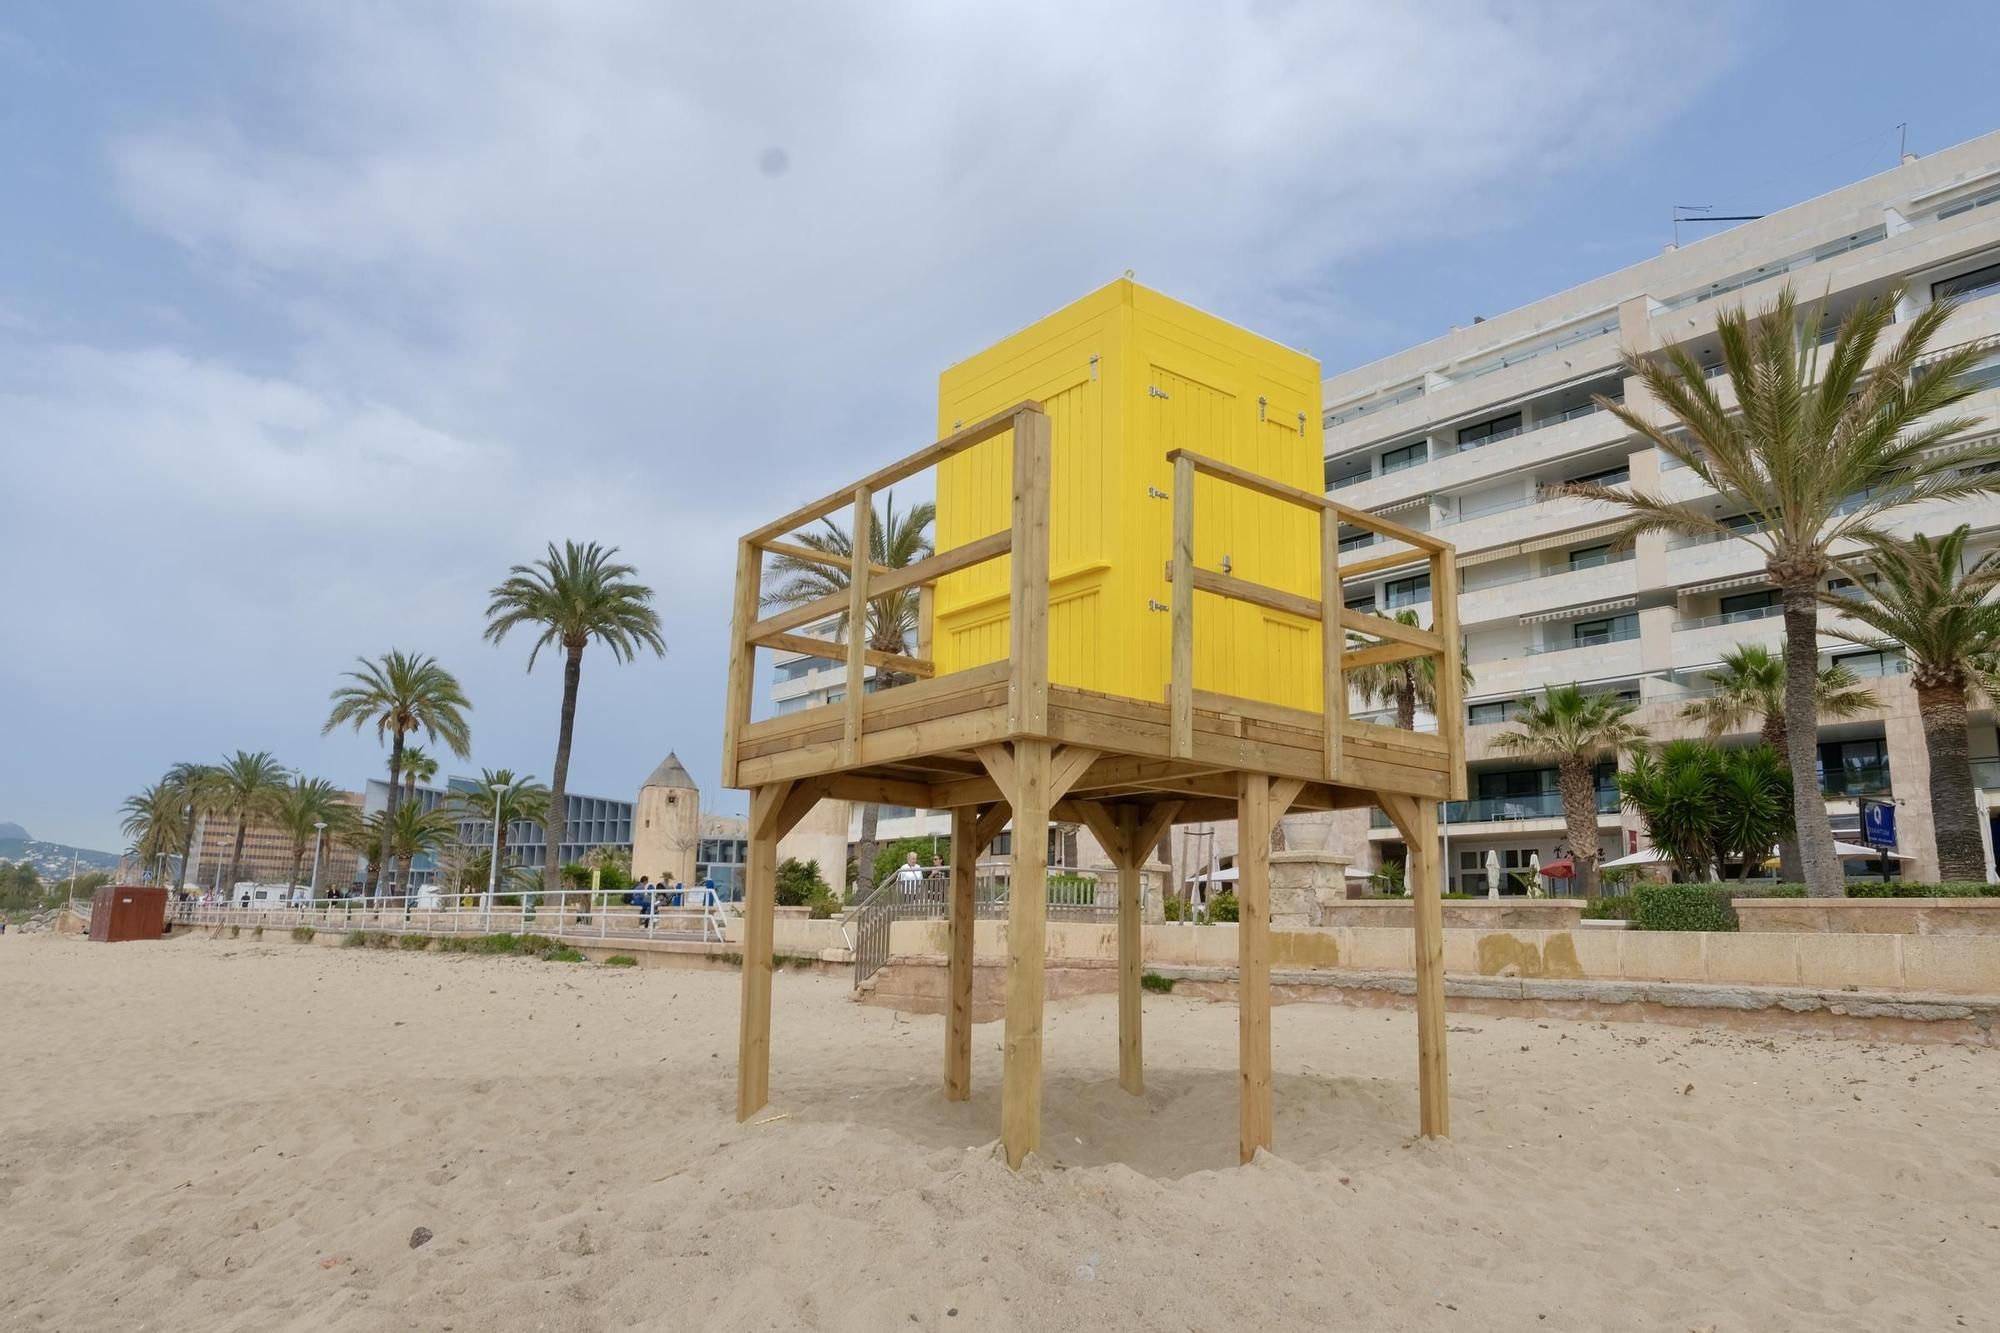 So sehen die neuen Wachtürme der Rettungsschwimmer an der Playa de Palma aus